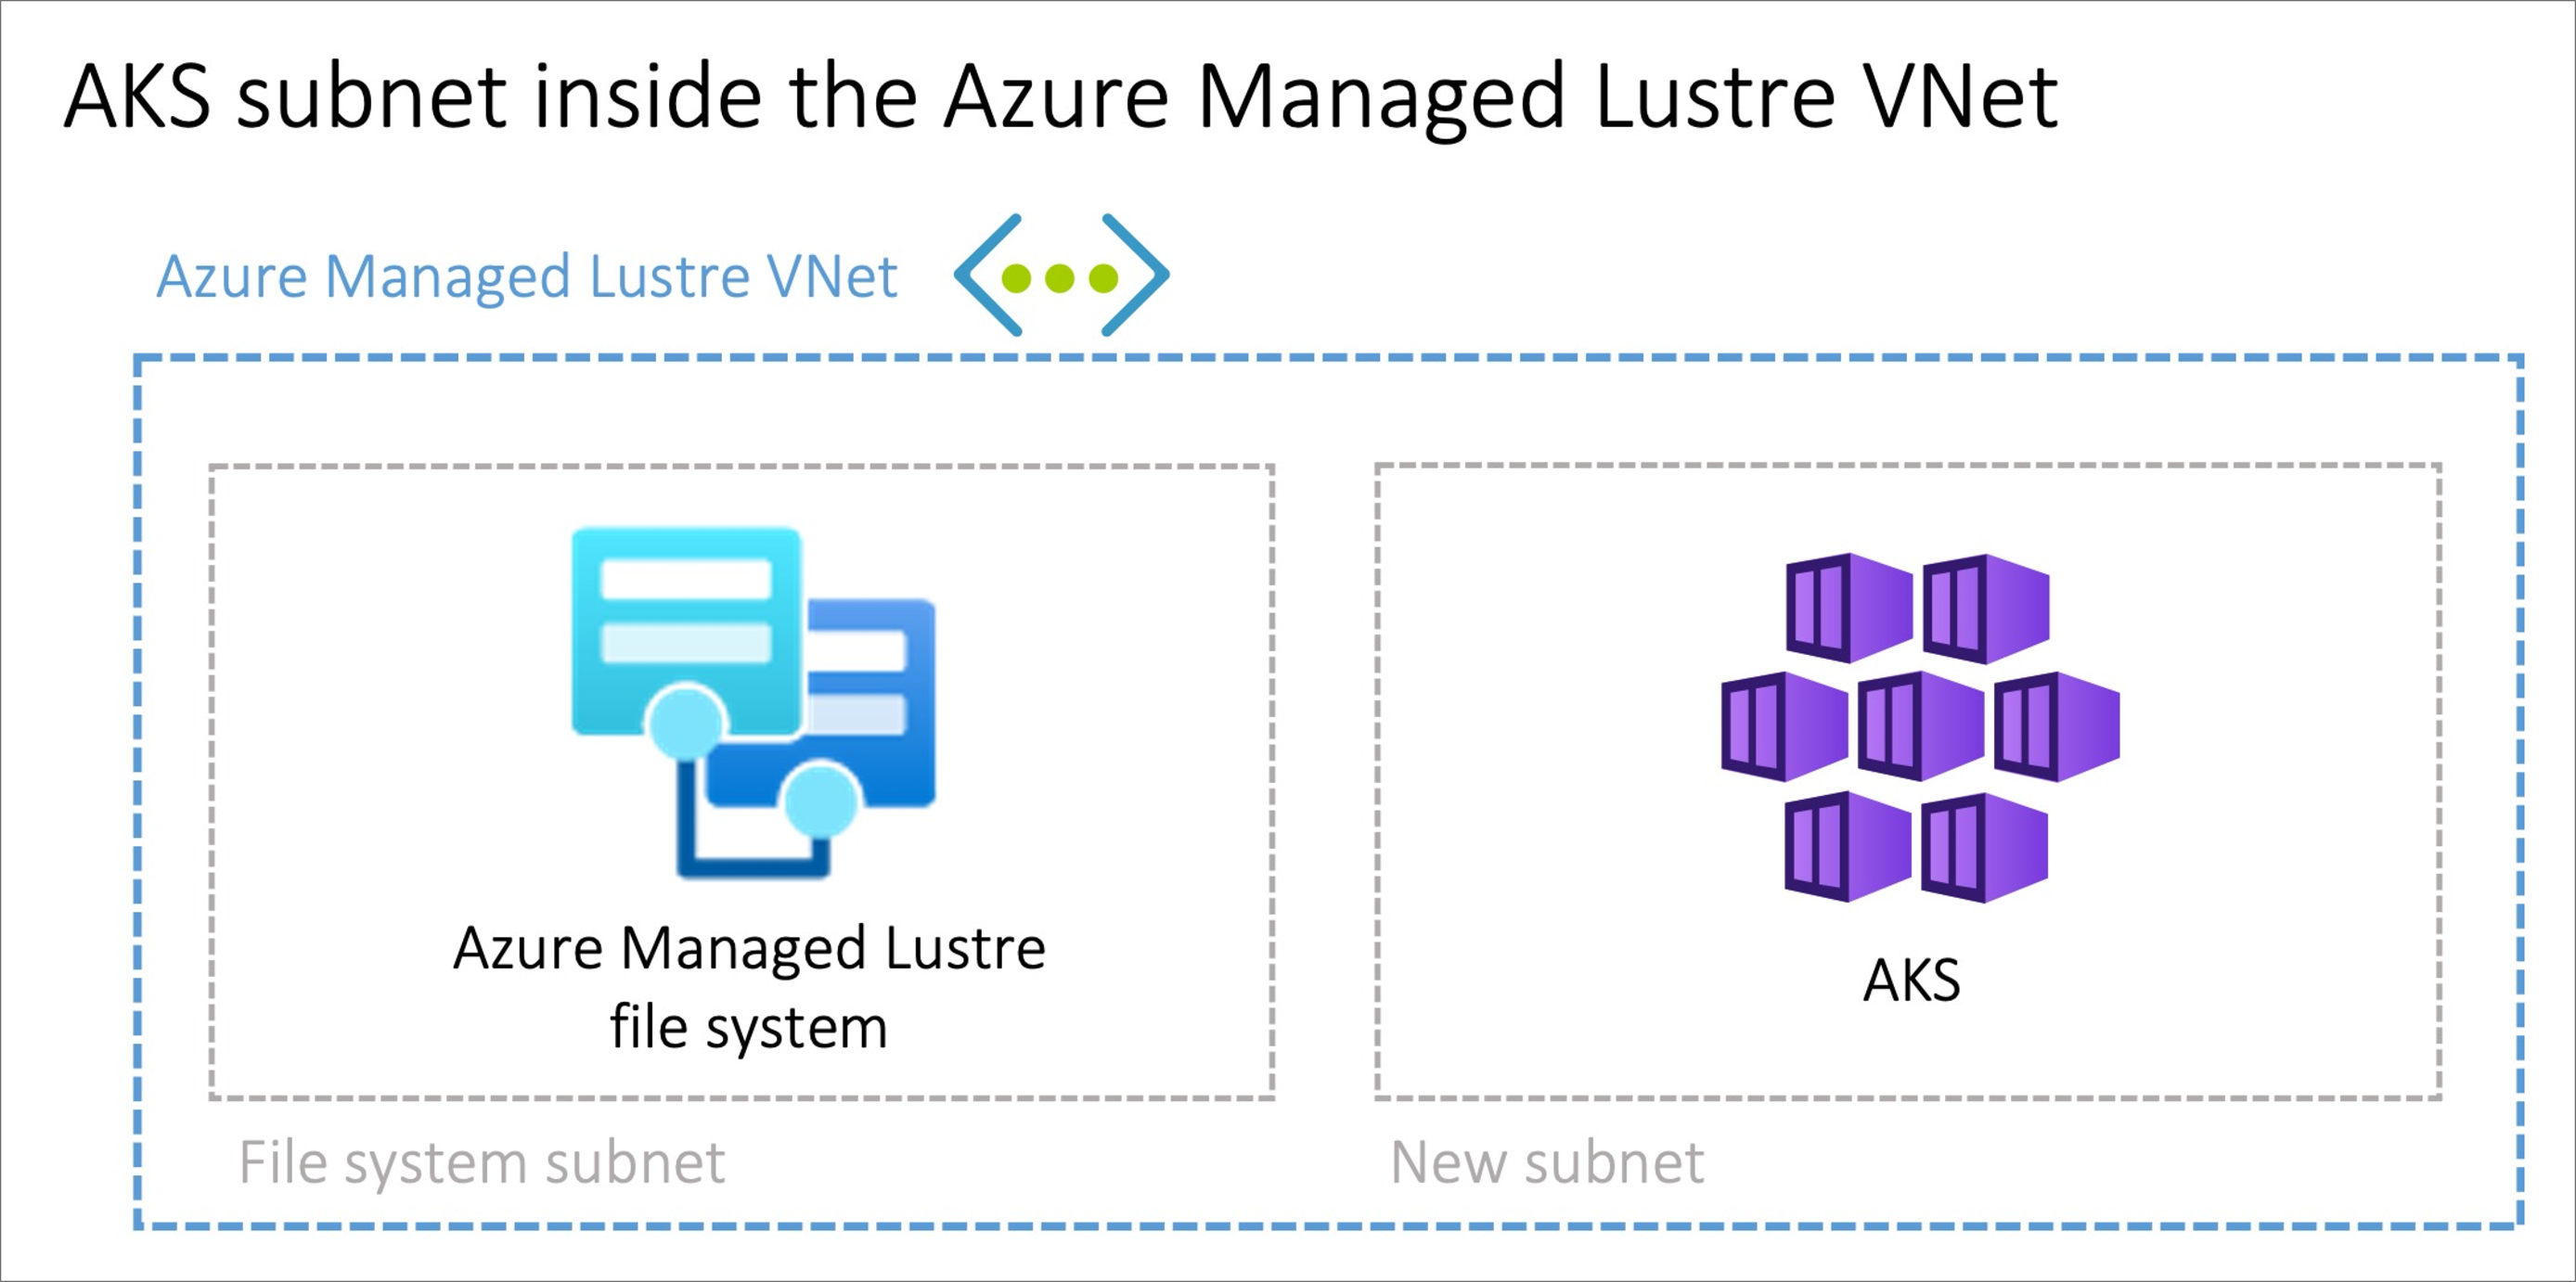 Biri Lustre dosya sistemi, diğeri AKS için iki alt ağa sahip Azure Yönetilen Lustre VNet'i gösteren diyagram.